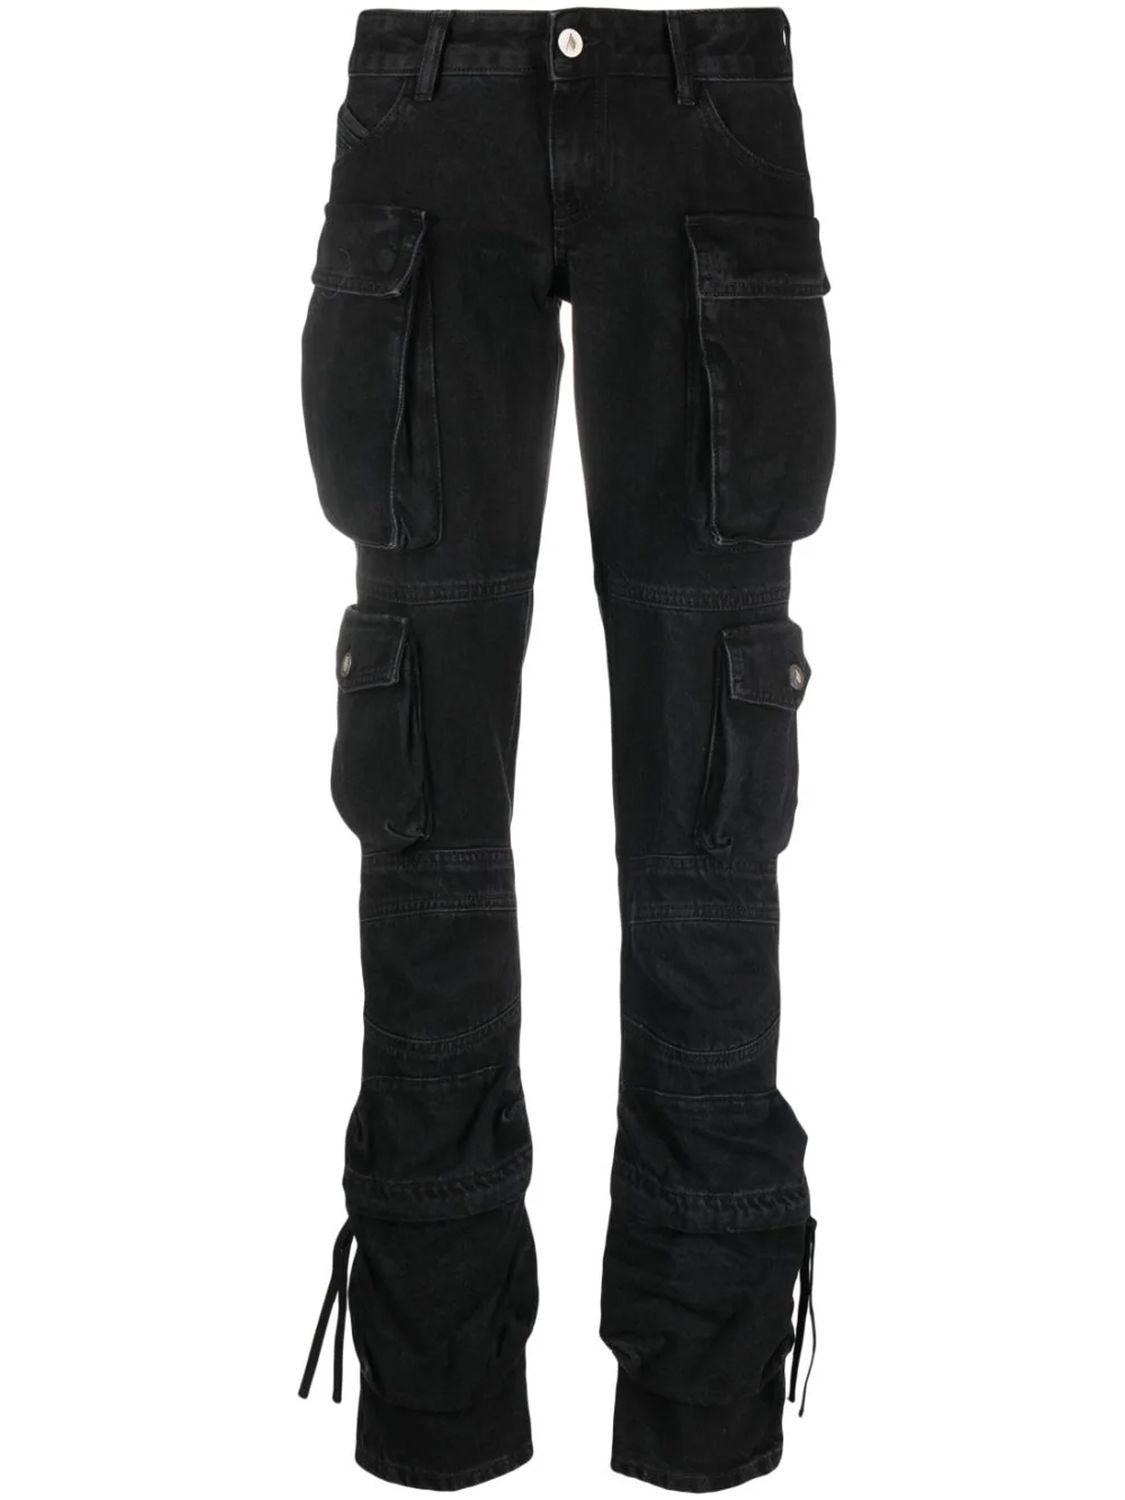 Black Low-Waist Cargo Jeans for Women